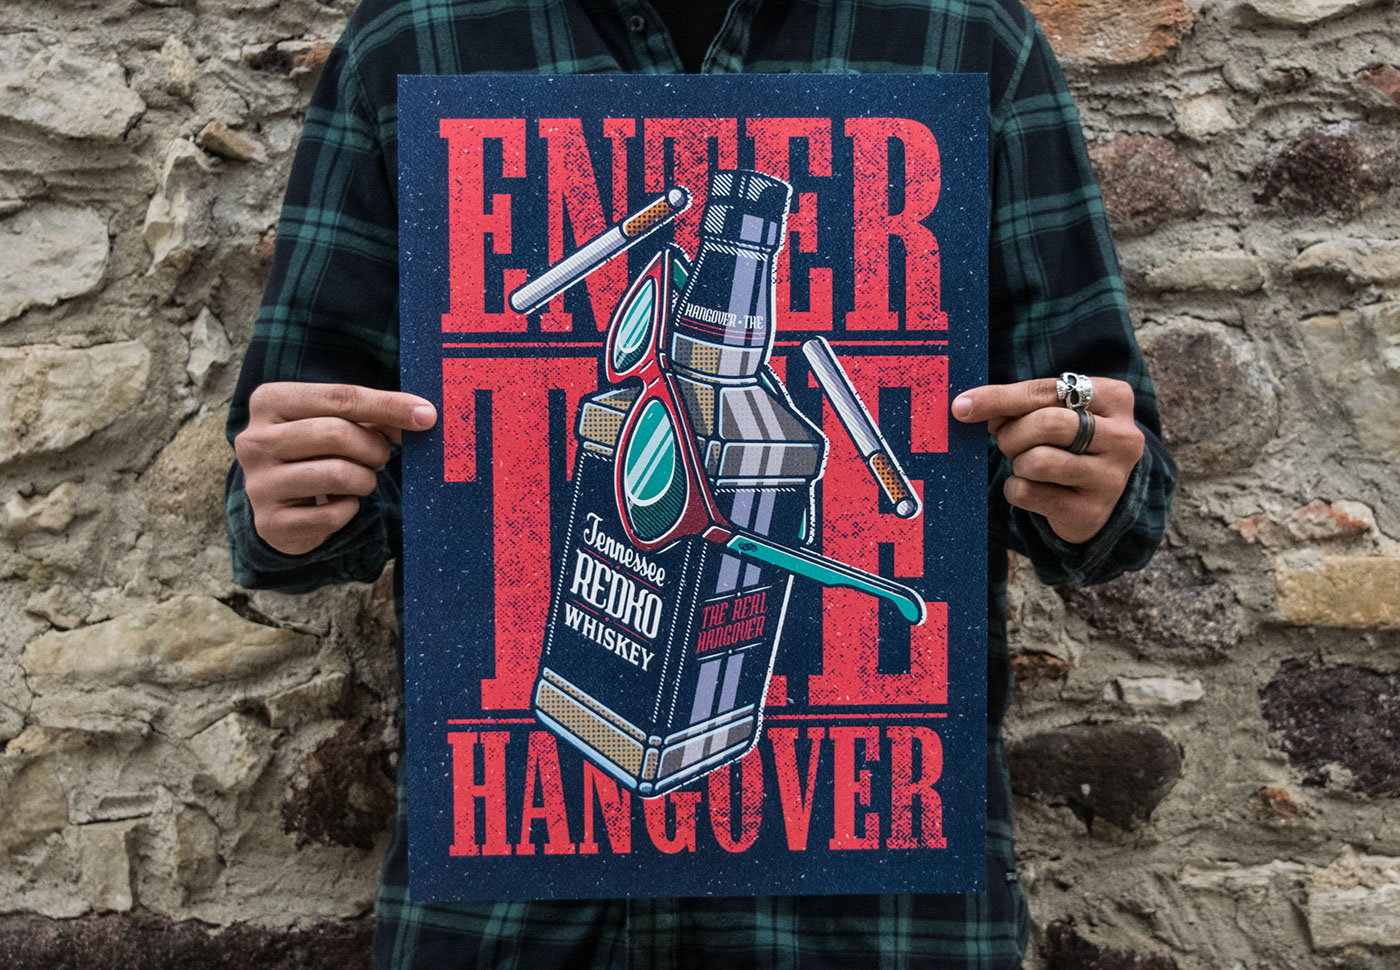 Enter the Hangover